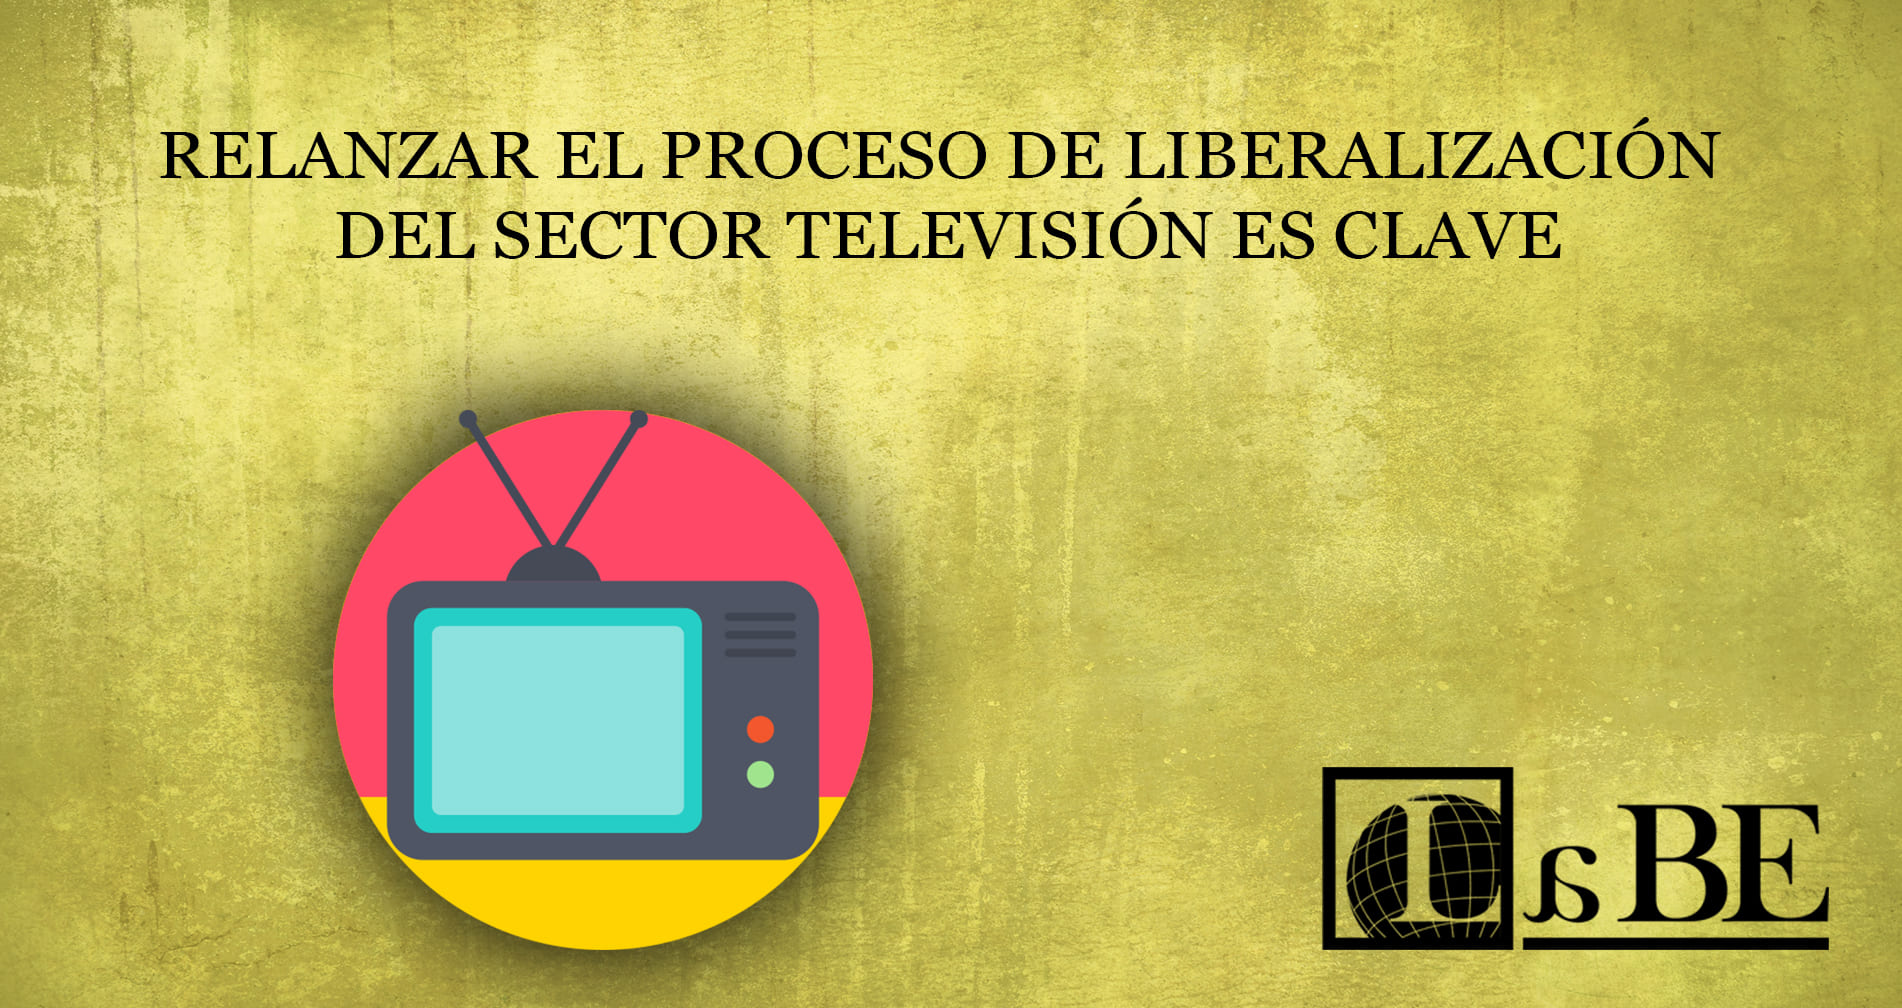 Relanzar el proceso de liberalización del sector televisión es clave